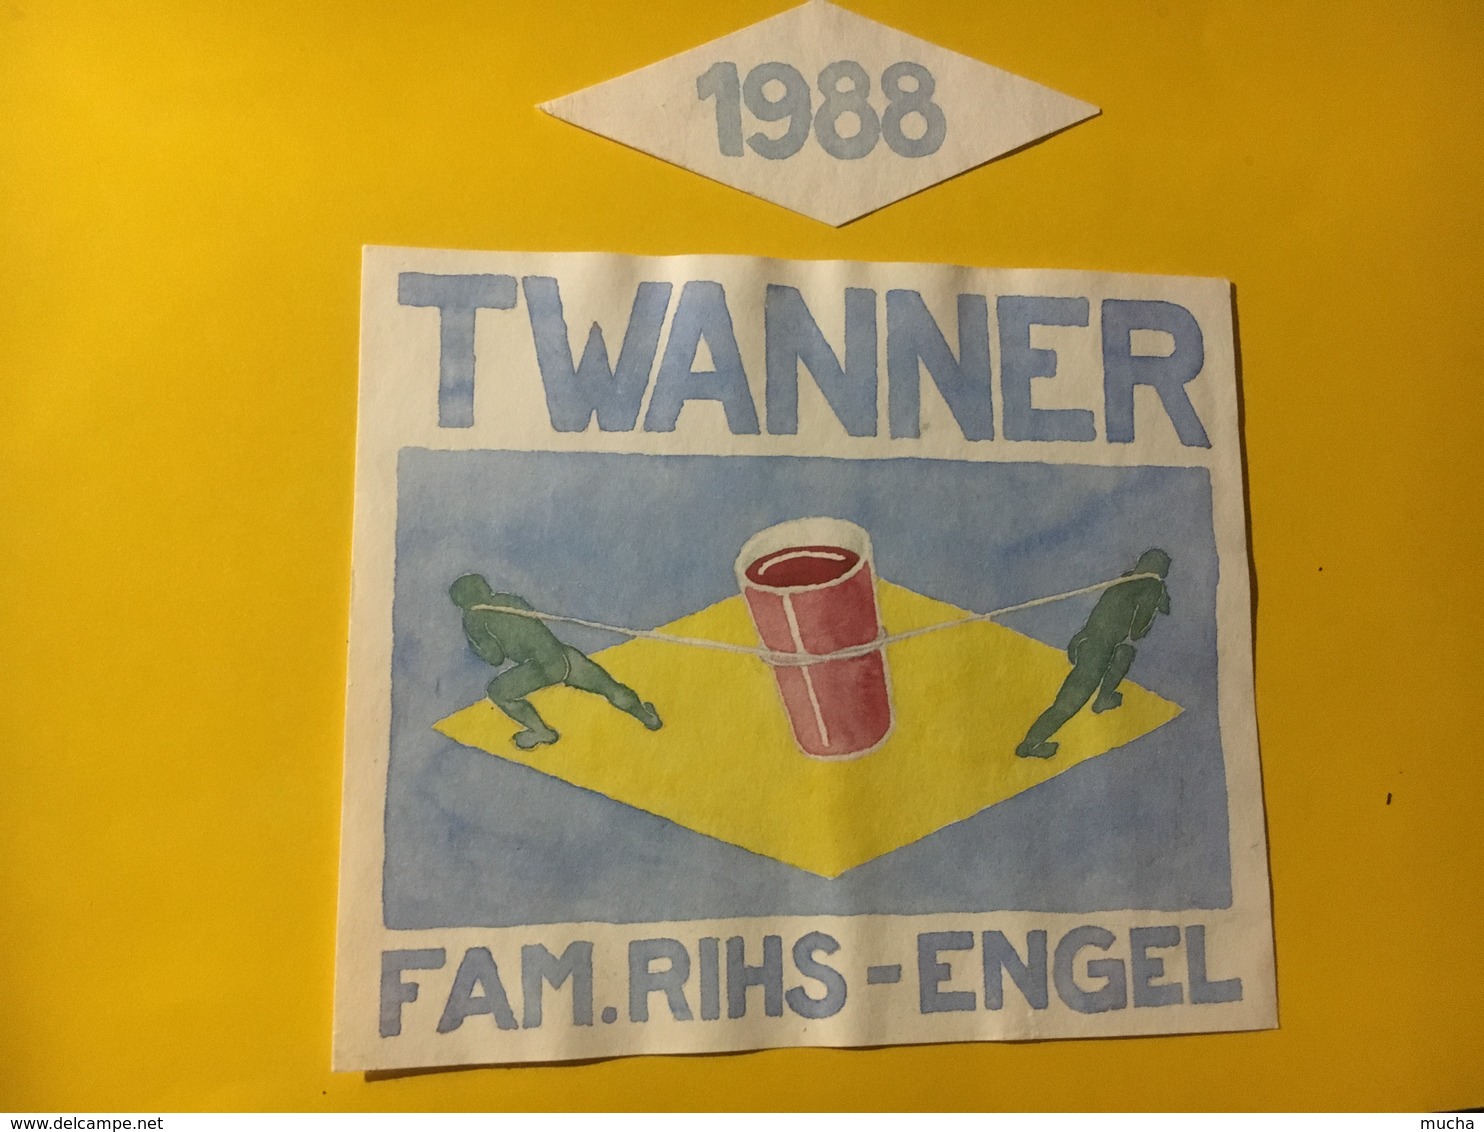 7947 - Twanner 1988 Fam, Rihs-Engel Suisse - Art